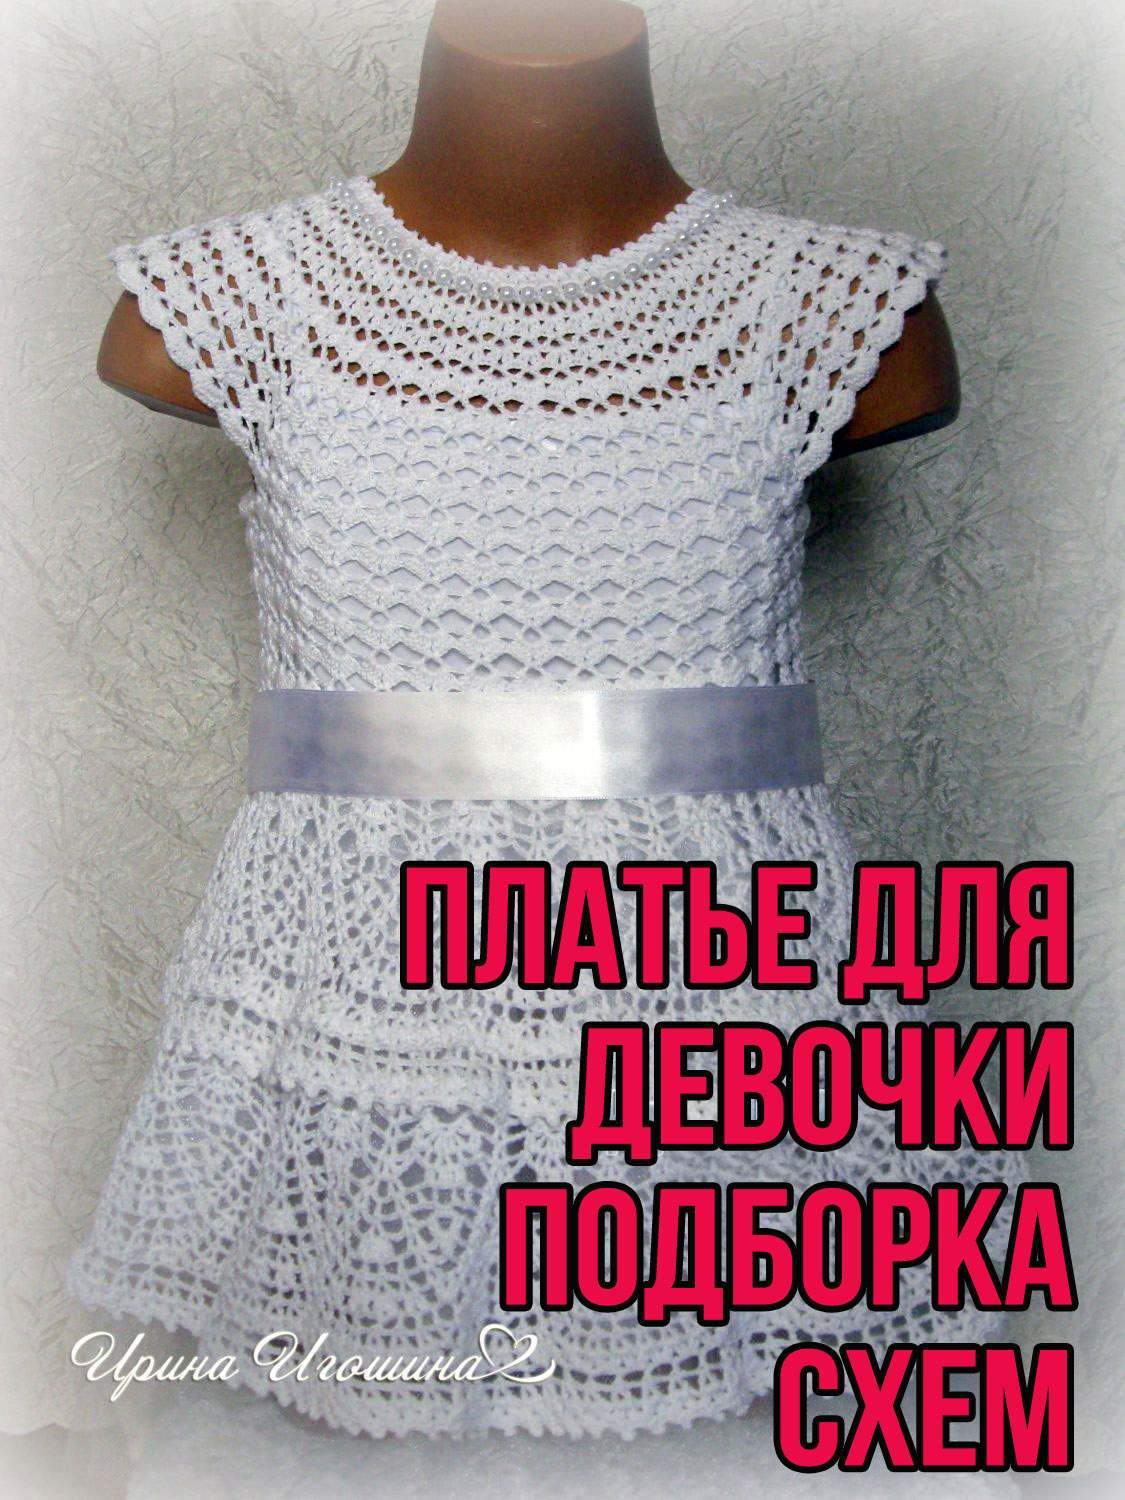 Нарядное платье для девочки, связанное крючком. Описание и схемы вязания бесплатно